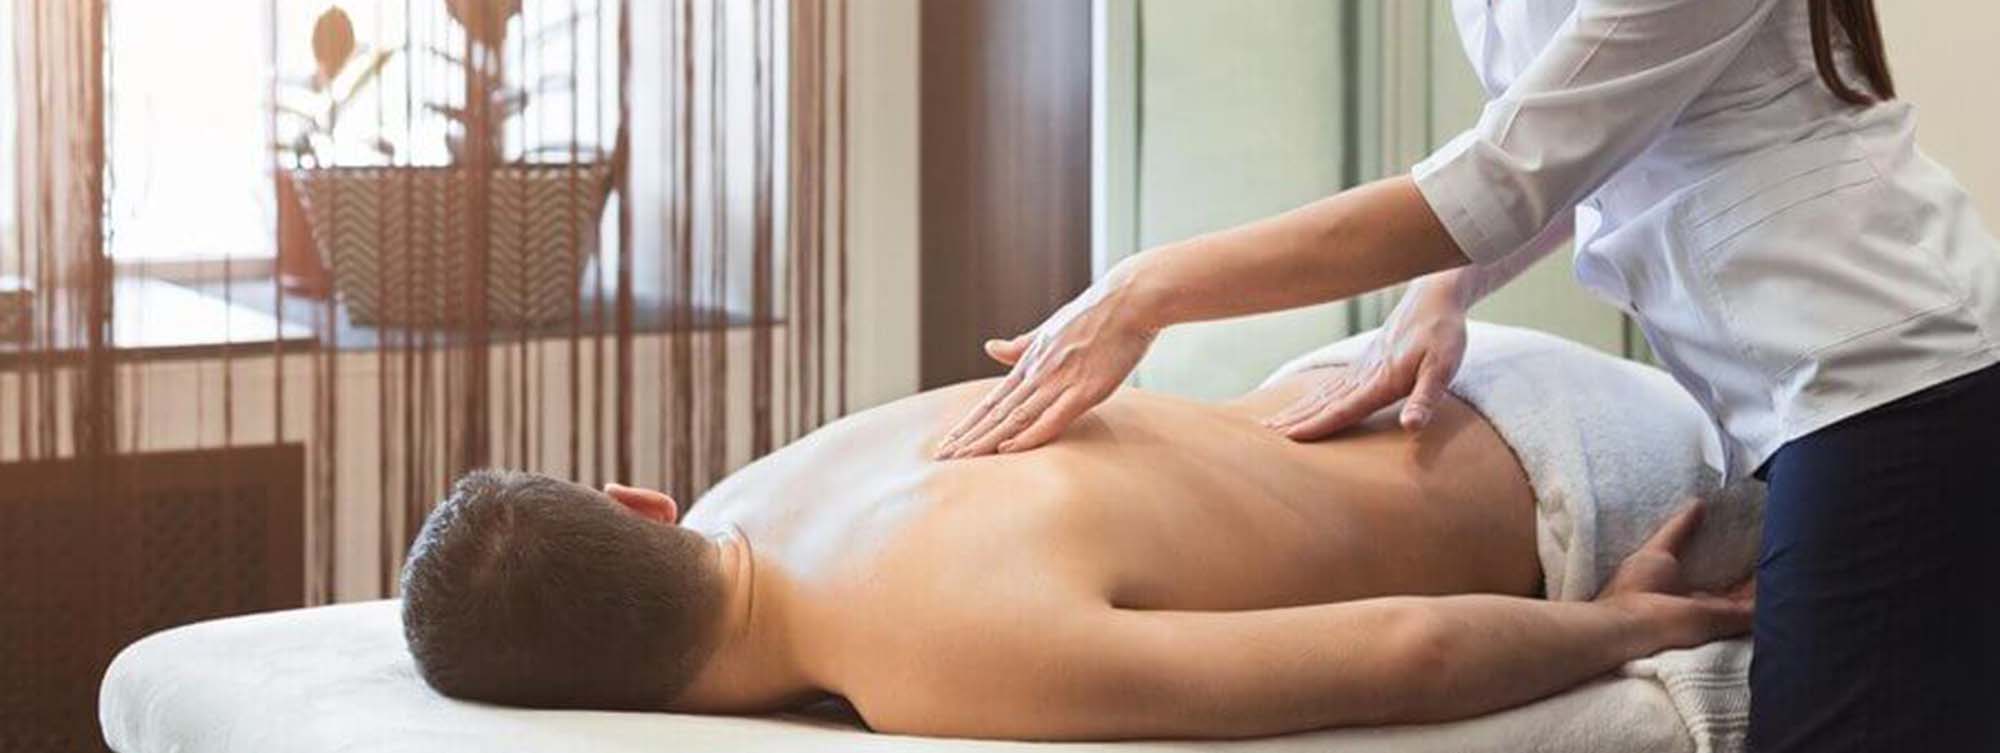 Как делать массаж спины: техника выполнения массажа в домашних условиях